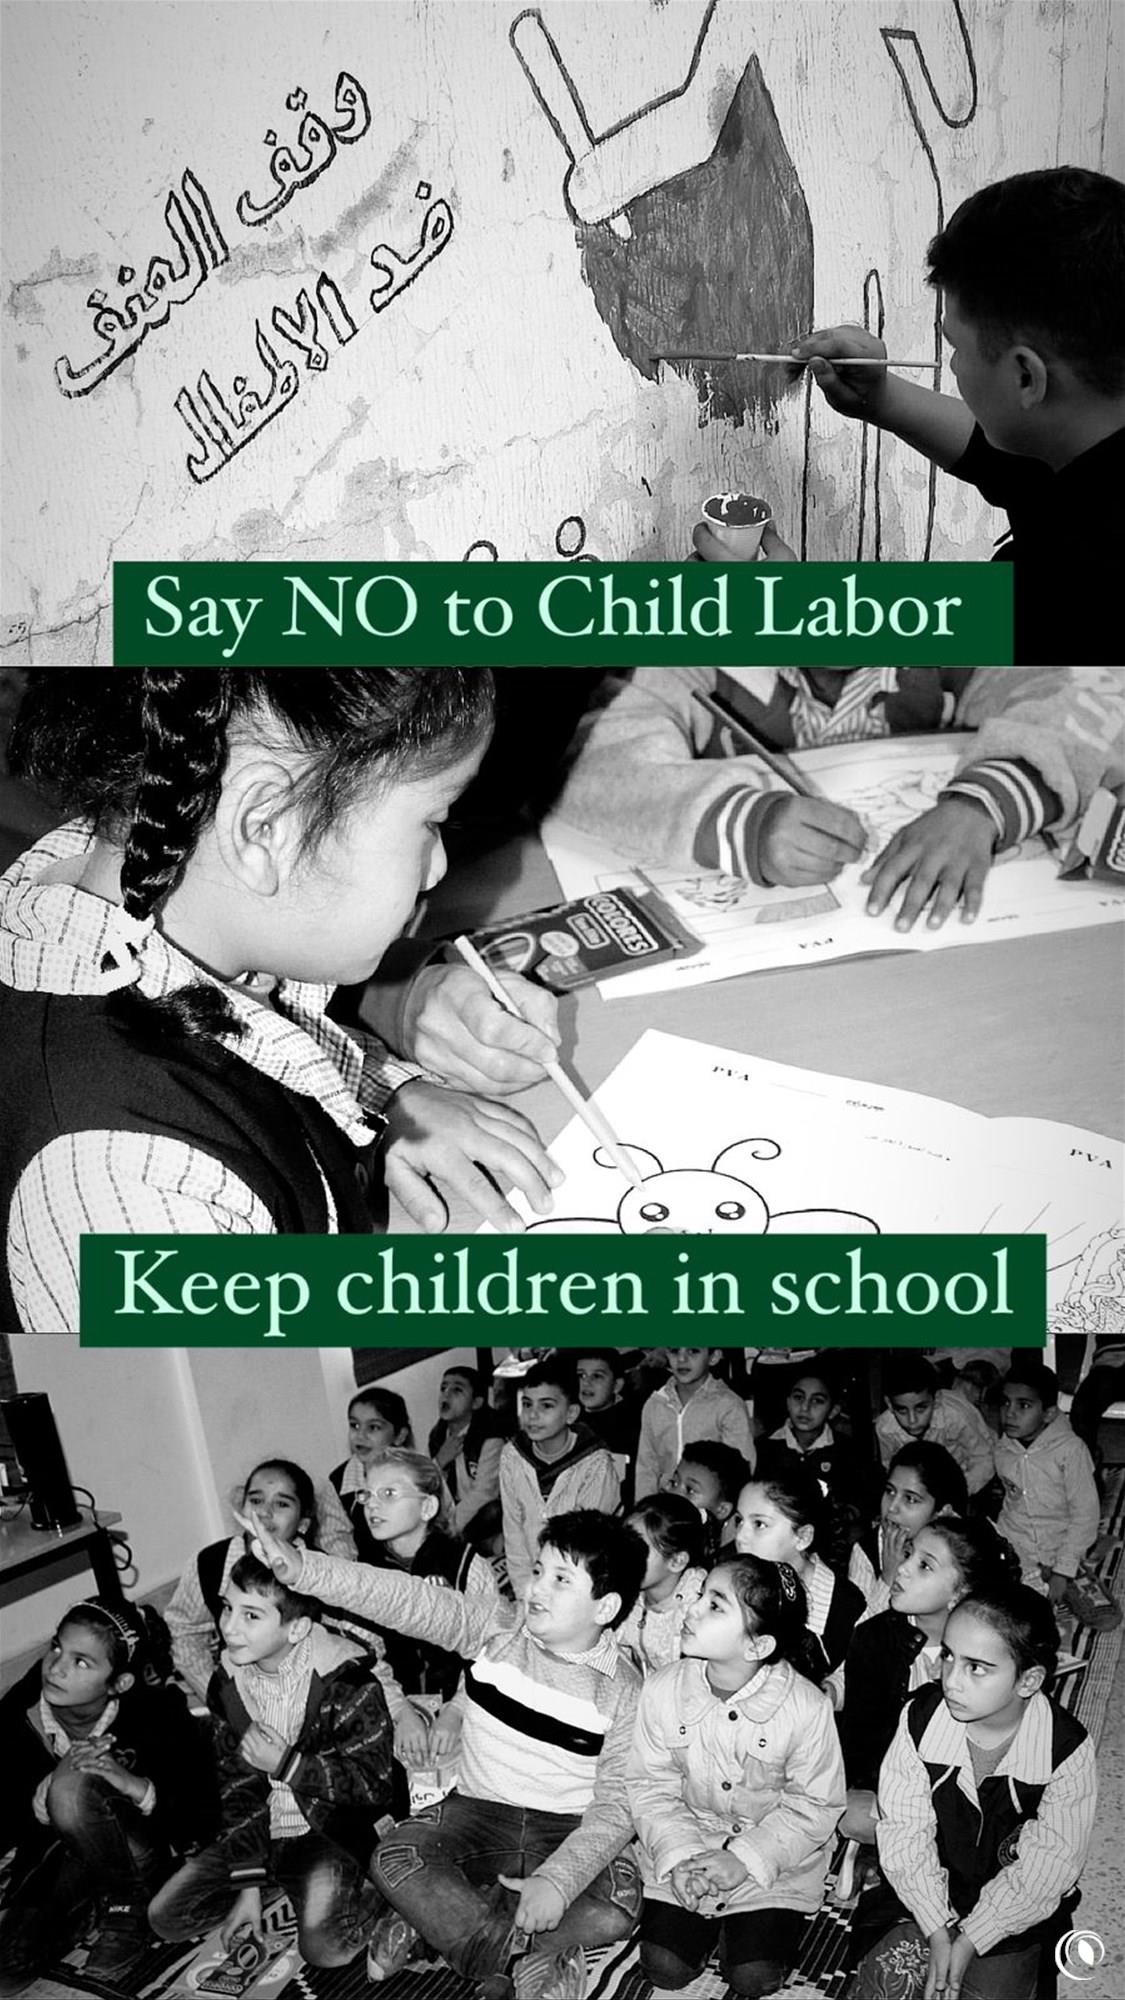 مبادرات "الريجي"  للحد من ظاهرة عمالة الاطفال